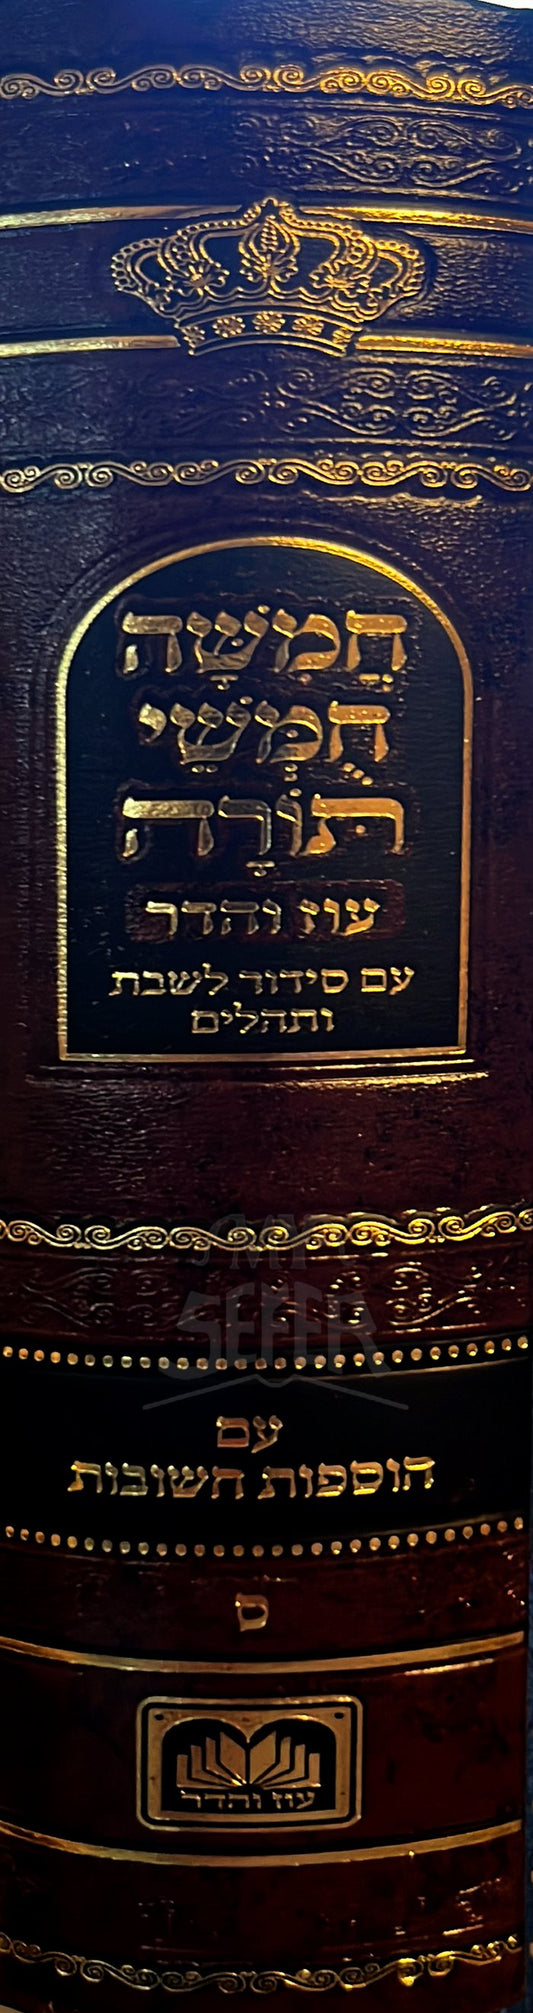 Chamisha Chumashei Torah & Siddur LeShabbat - Sefard